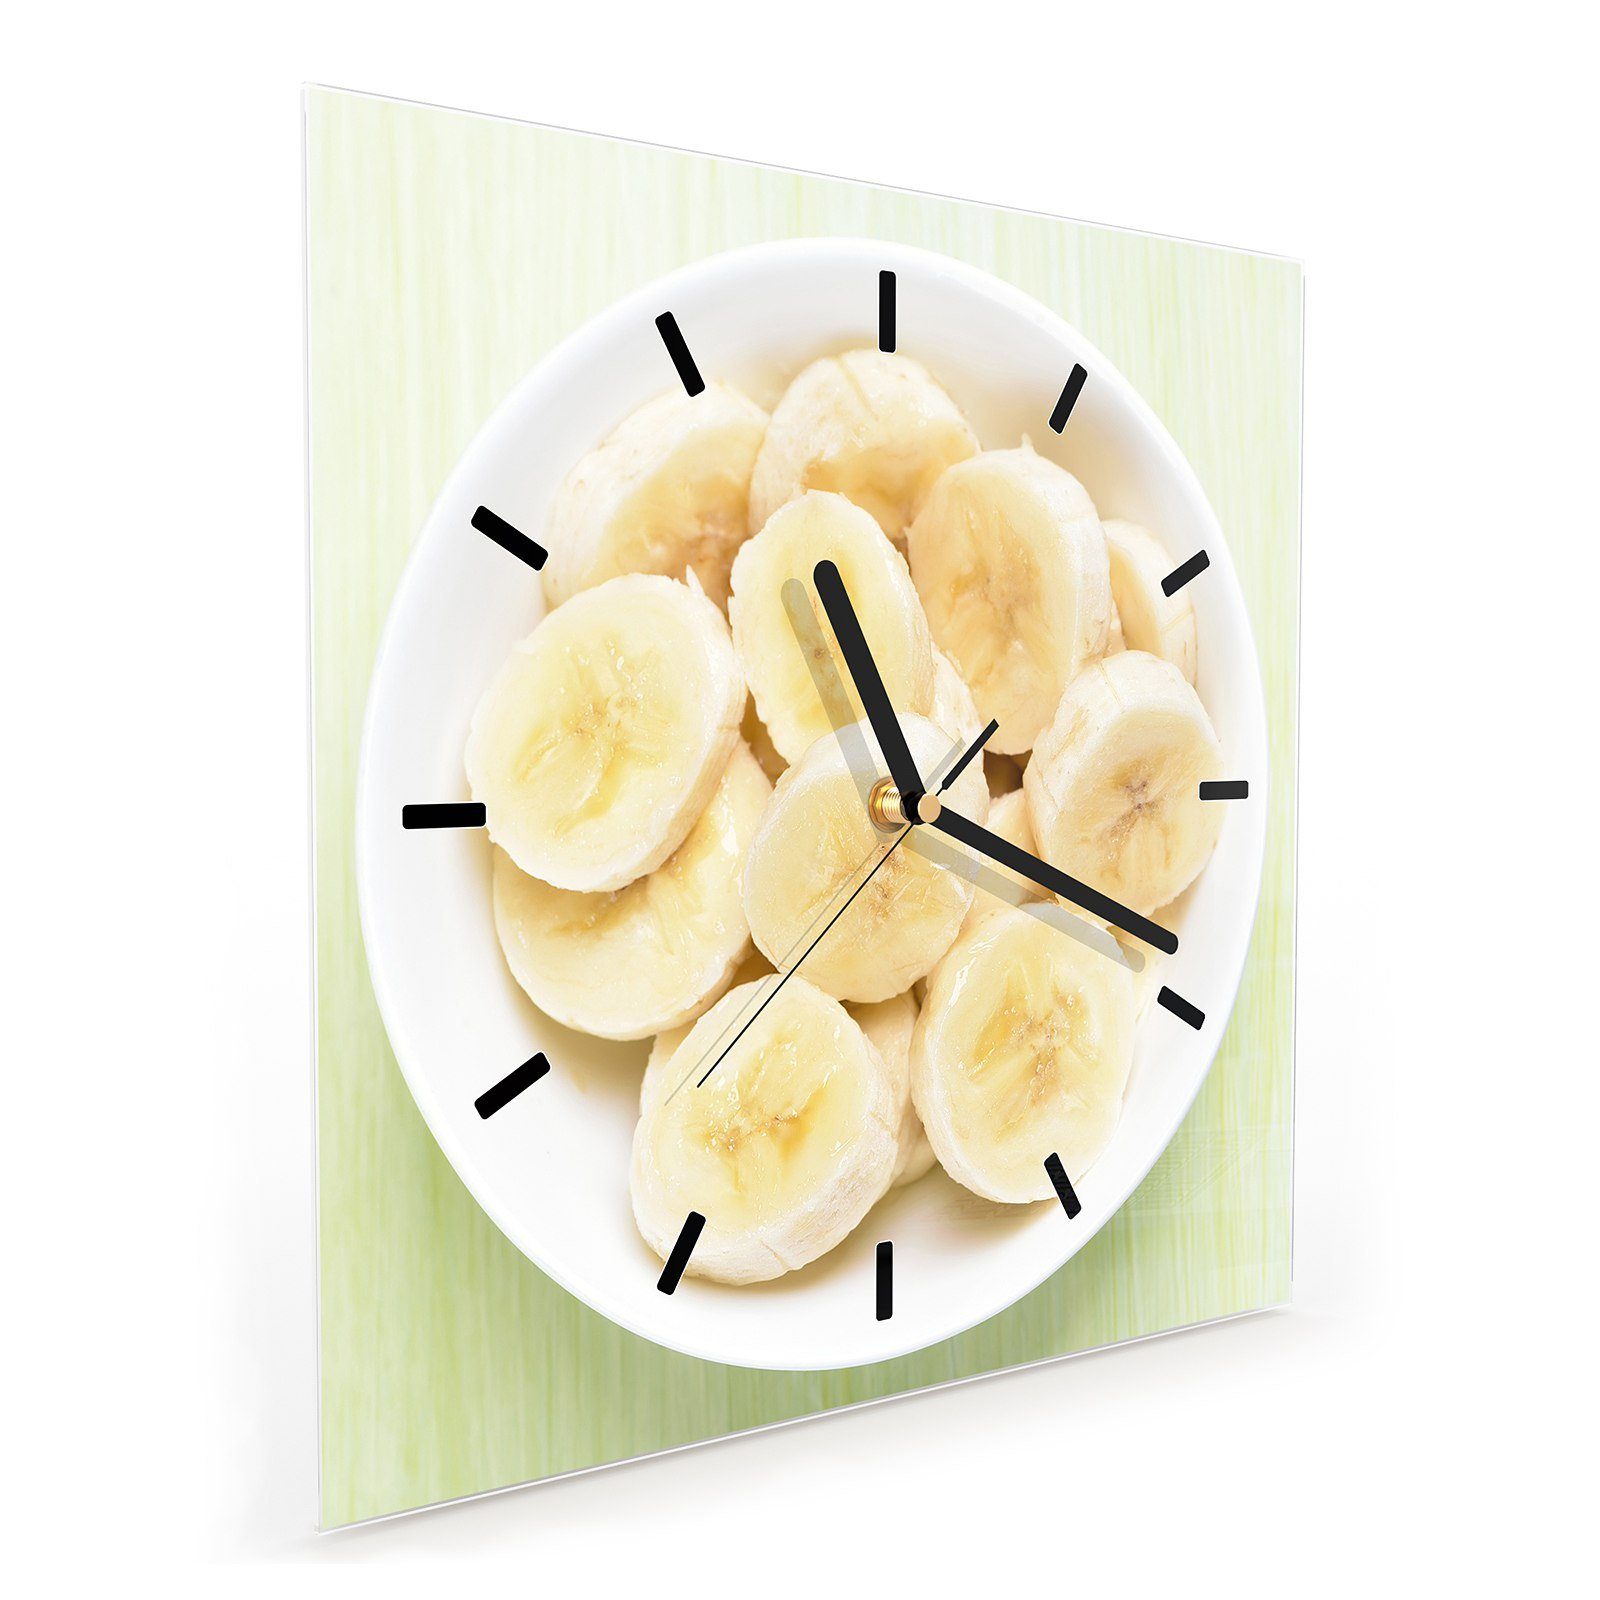 30 Motiv Größe Bananen Primedeco Glasuhr Wandkunst 30 cm Wanduhr mit x Teller Wanduhr auf